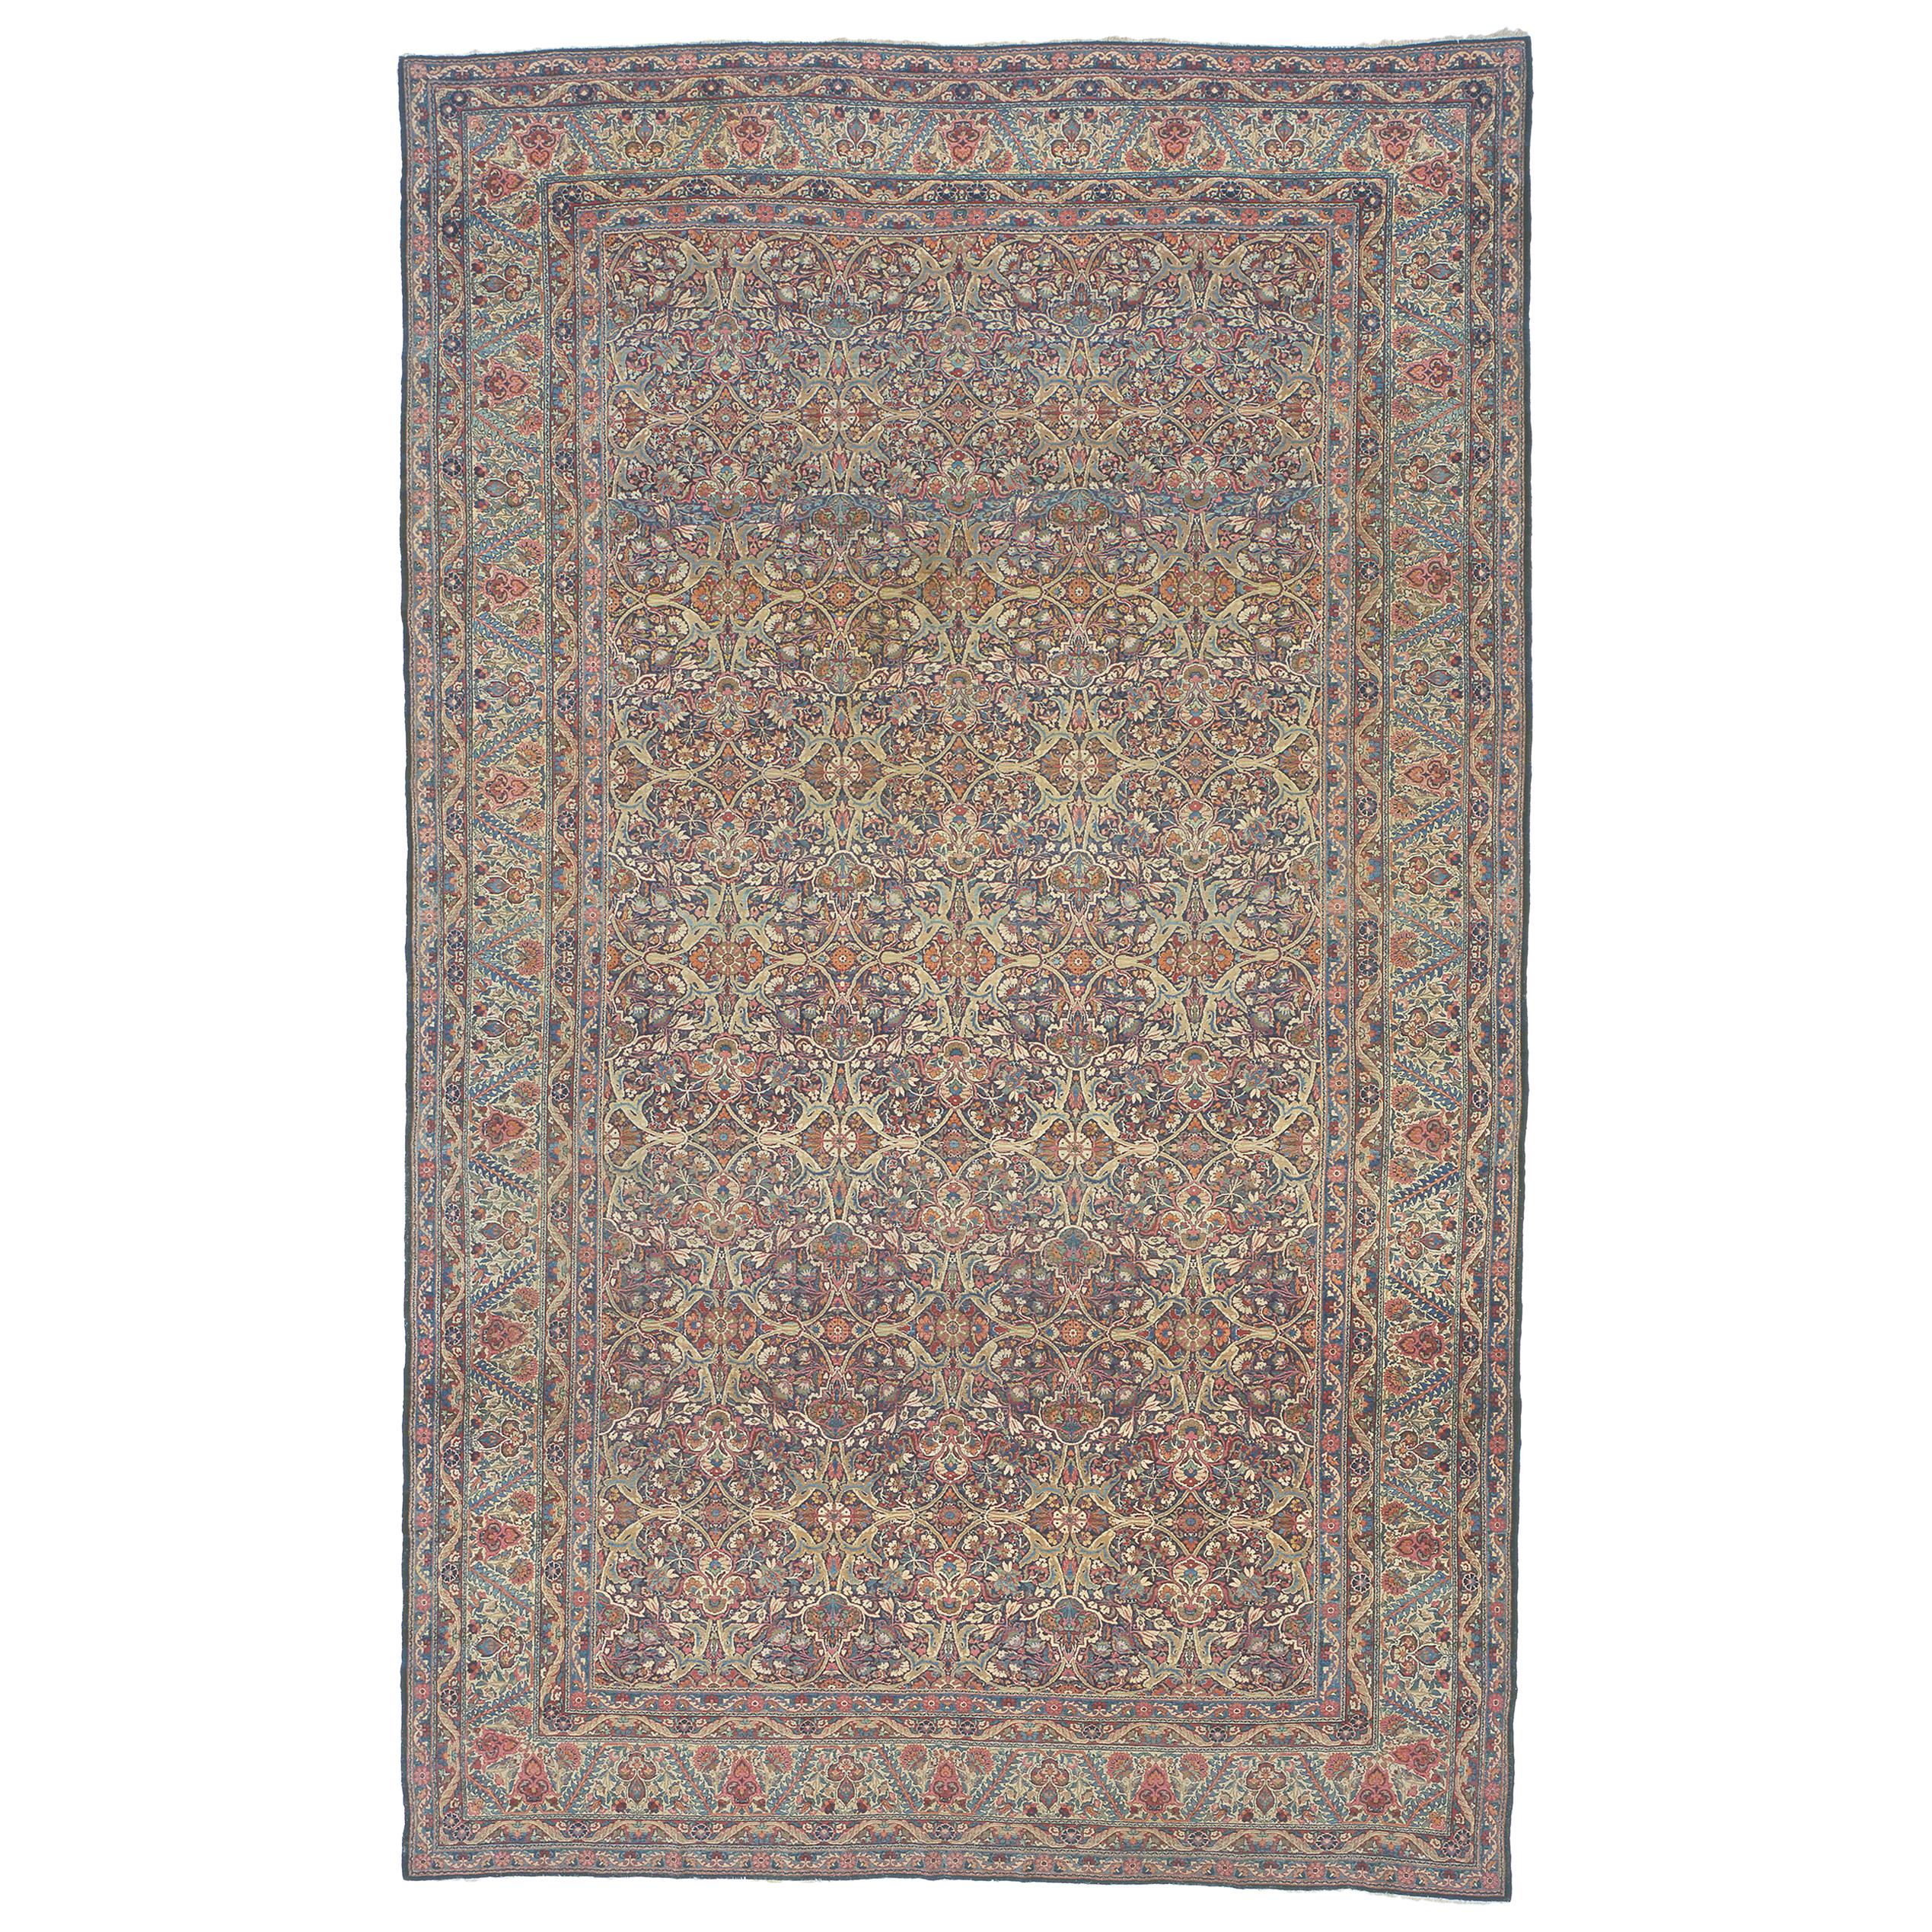 Persischer Kerman-Schnitzerteppich aus dem späten 19. Jahrhundert